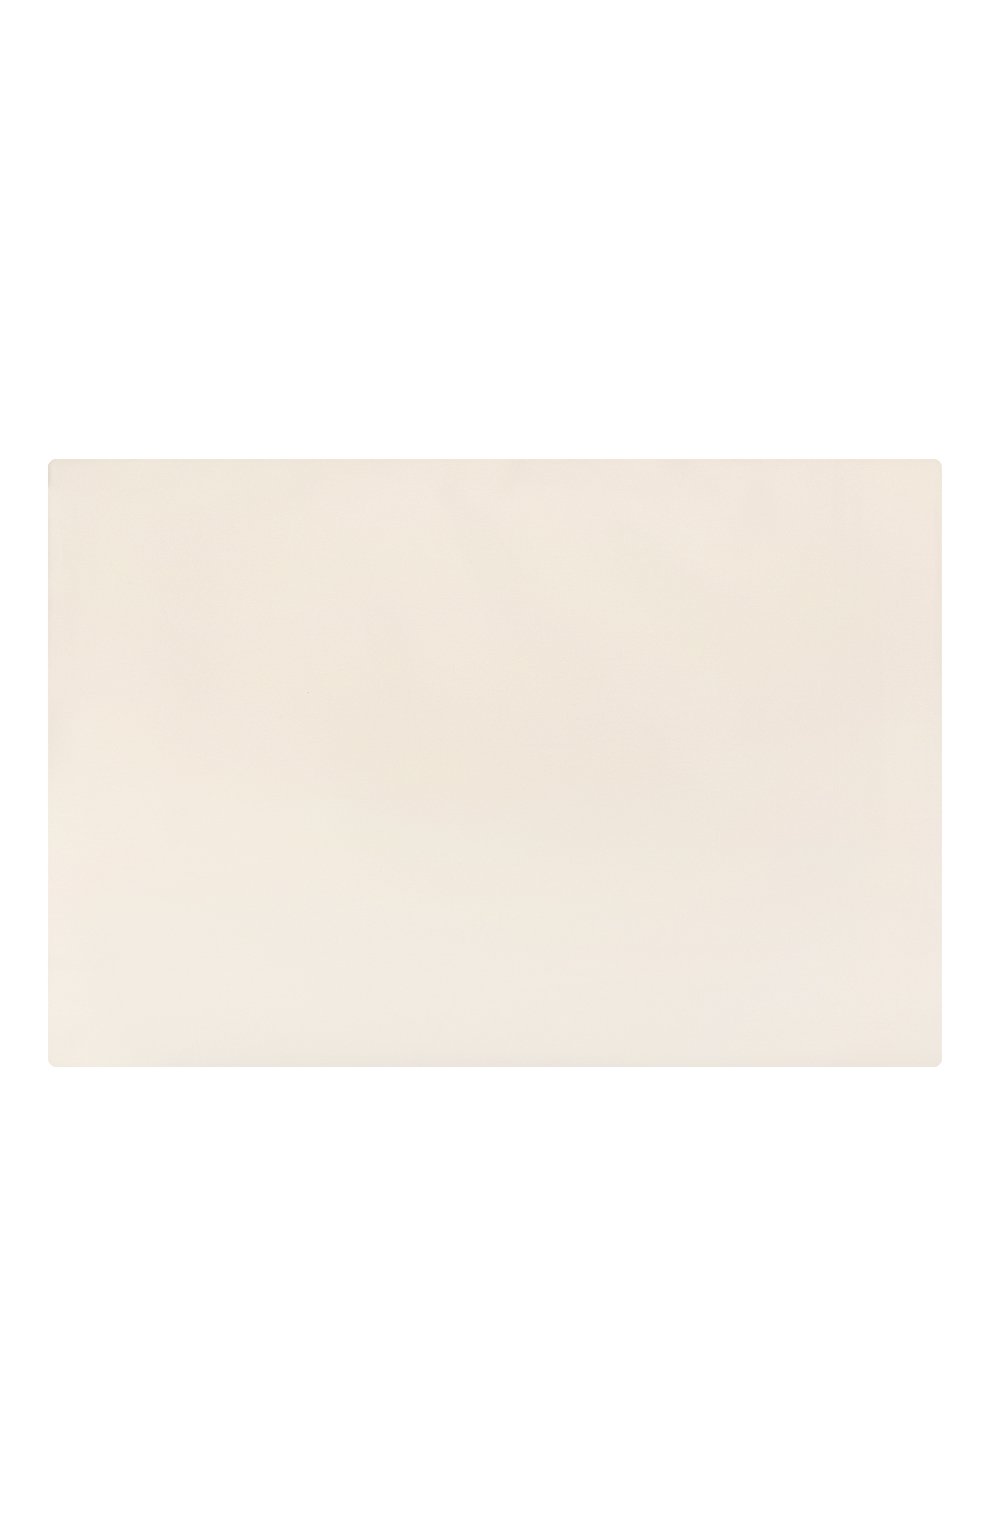 Комплект постельного белья FRETTE кремвого цвета, арт. F00409 E3491 260F | Фото 3